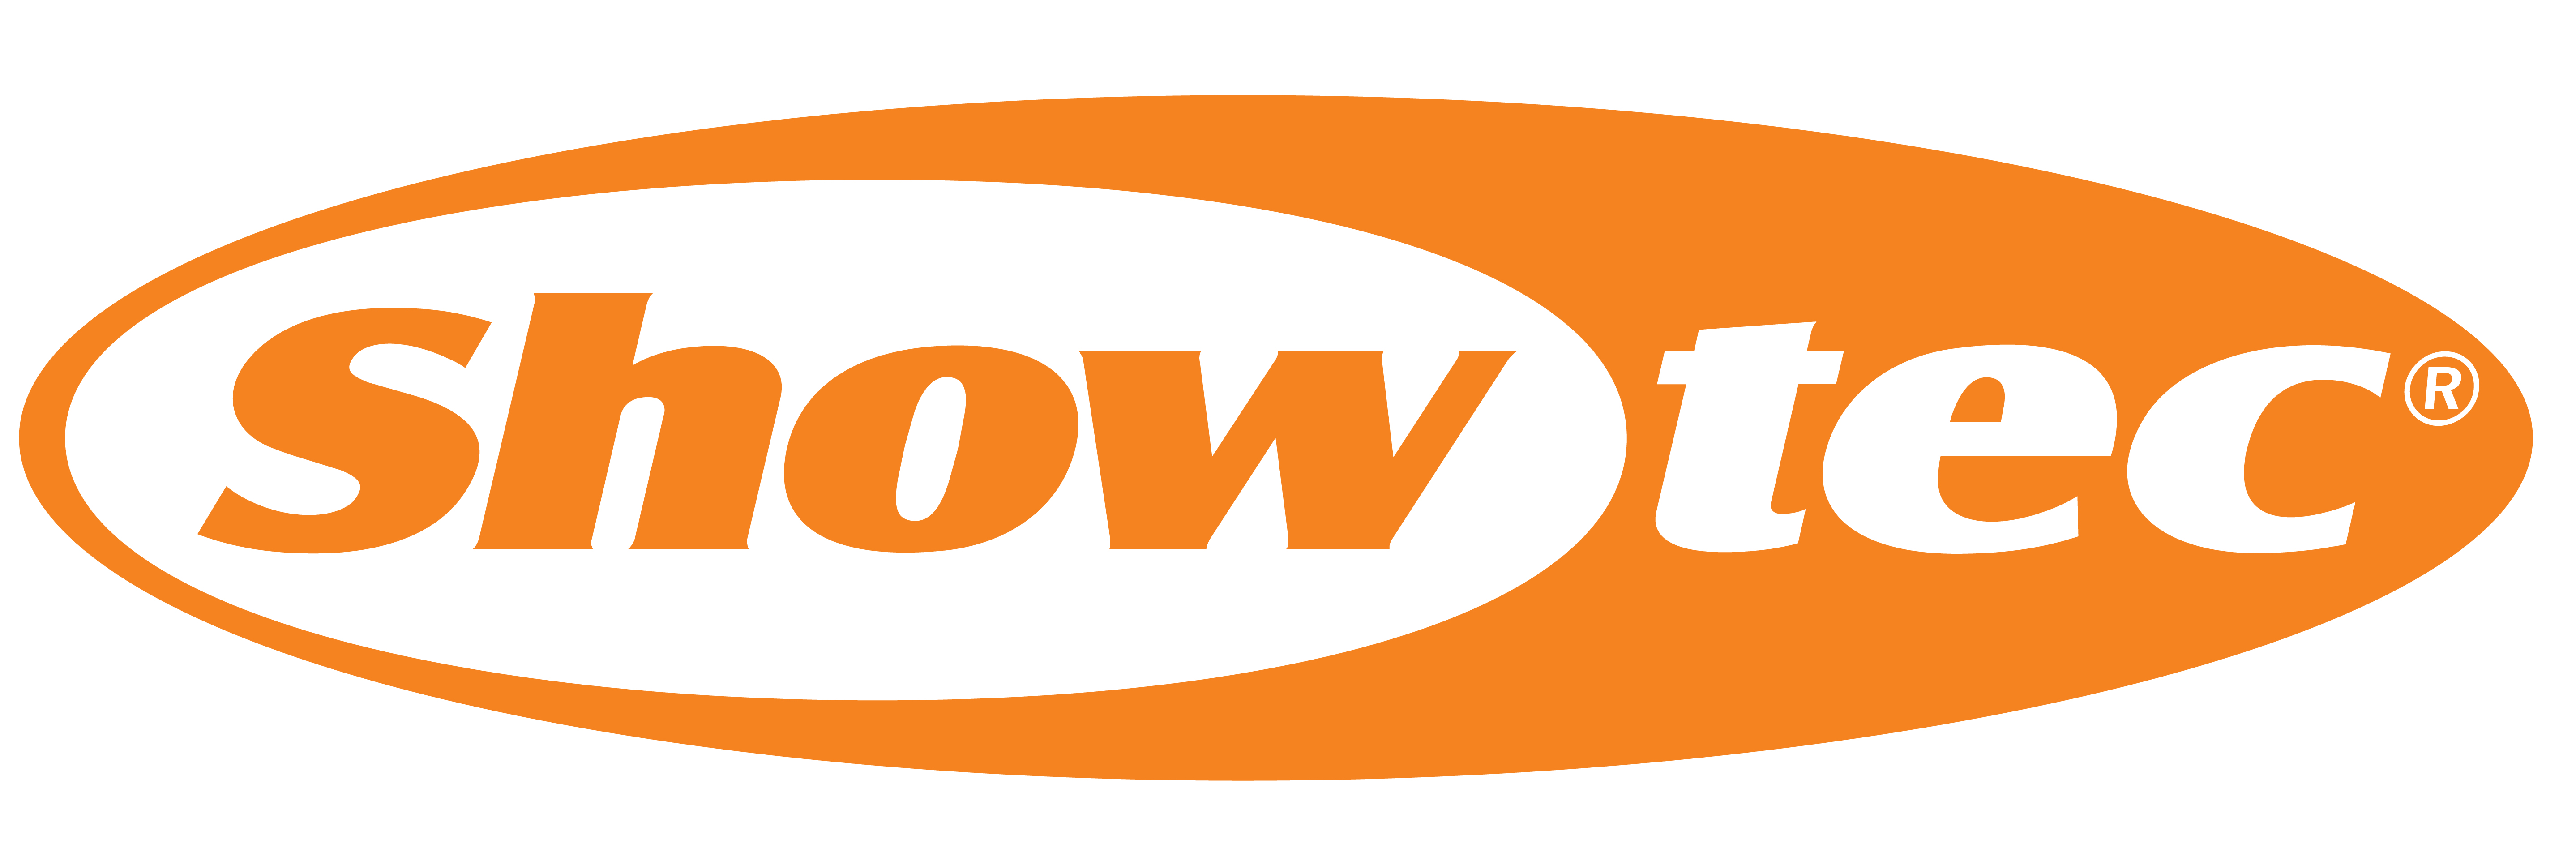 Showtec logo highlite